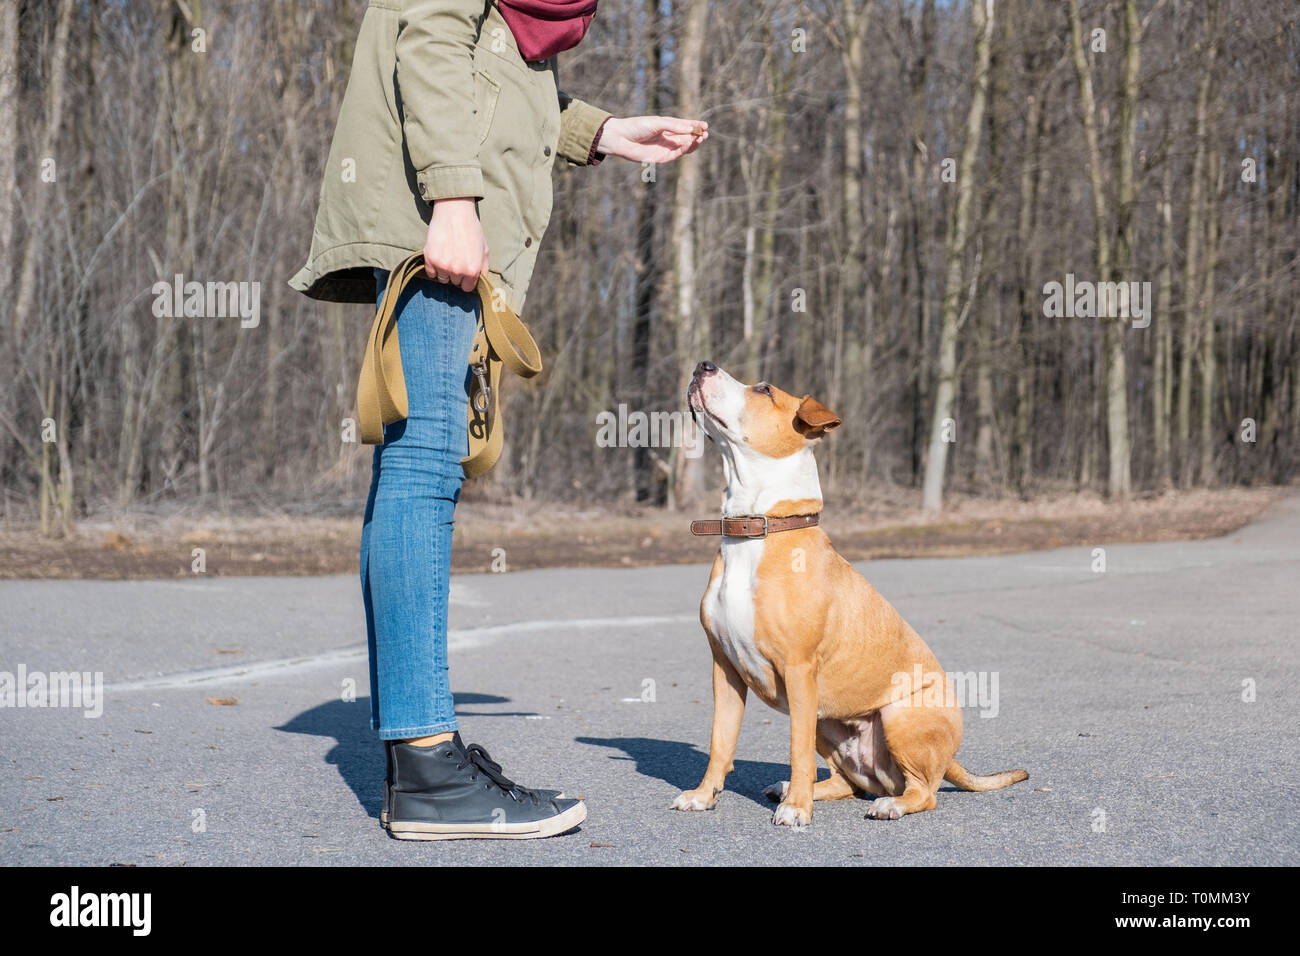 Formación de un perro adulto para hacer 'comando'. Persona escolaridad un staffordshire terrier en un parque, perro obediente se sienta y escucha al propietario. Foto de stock